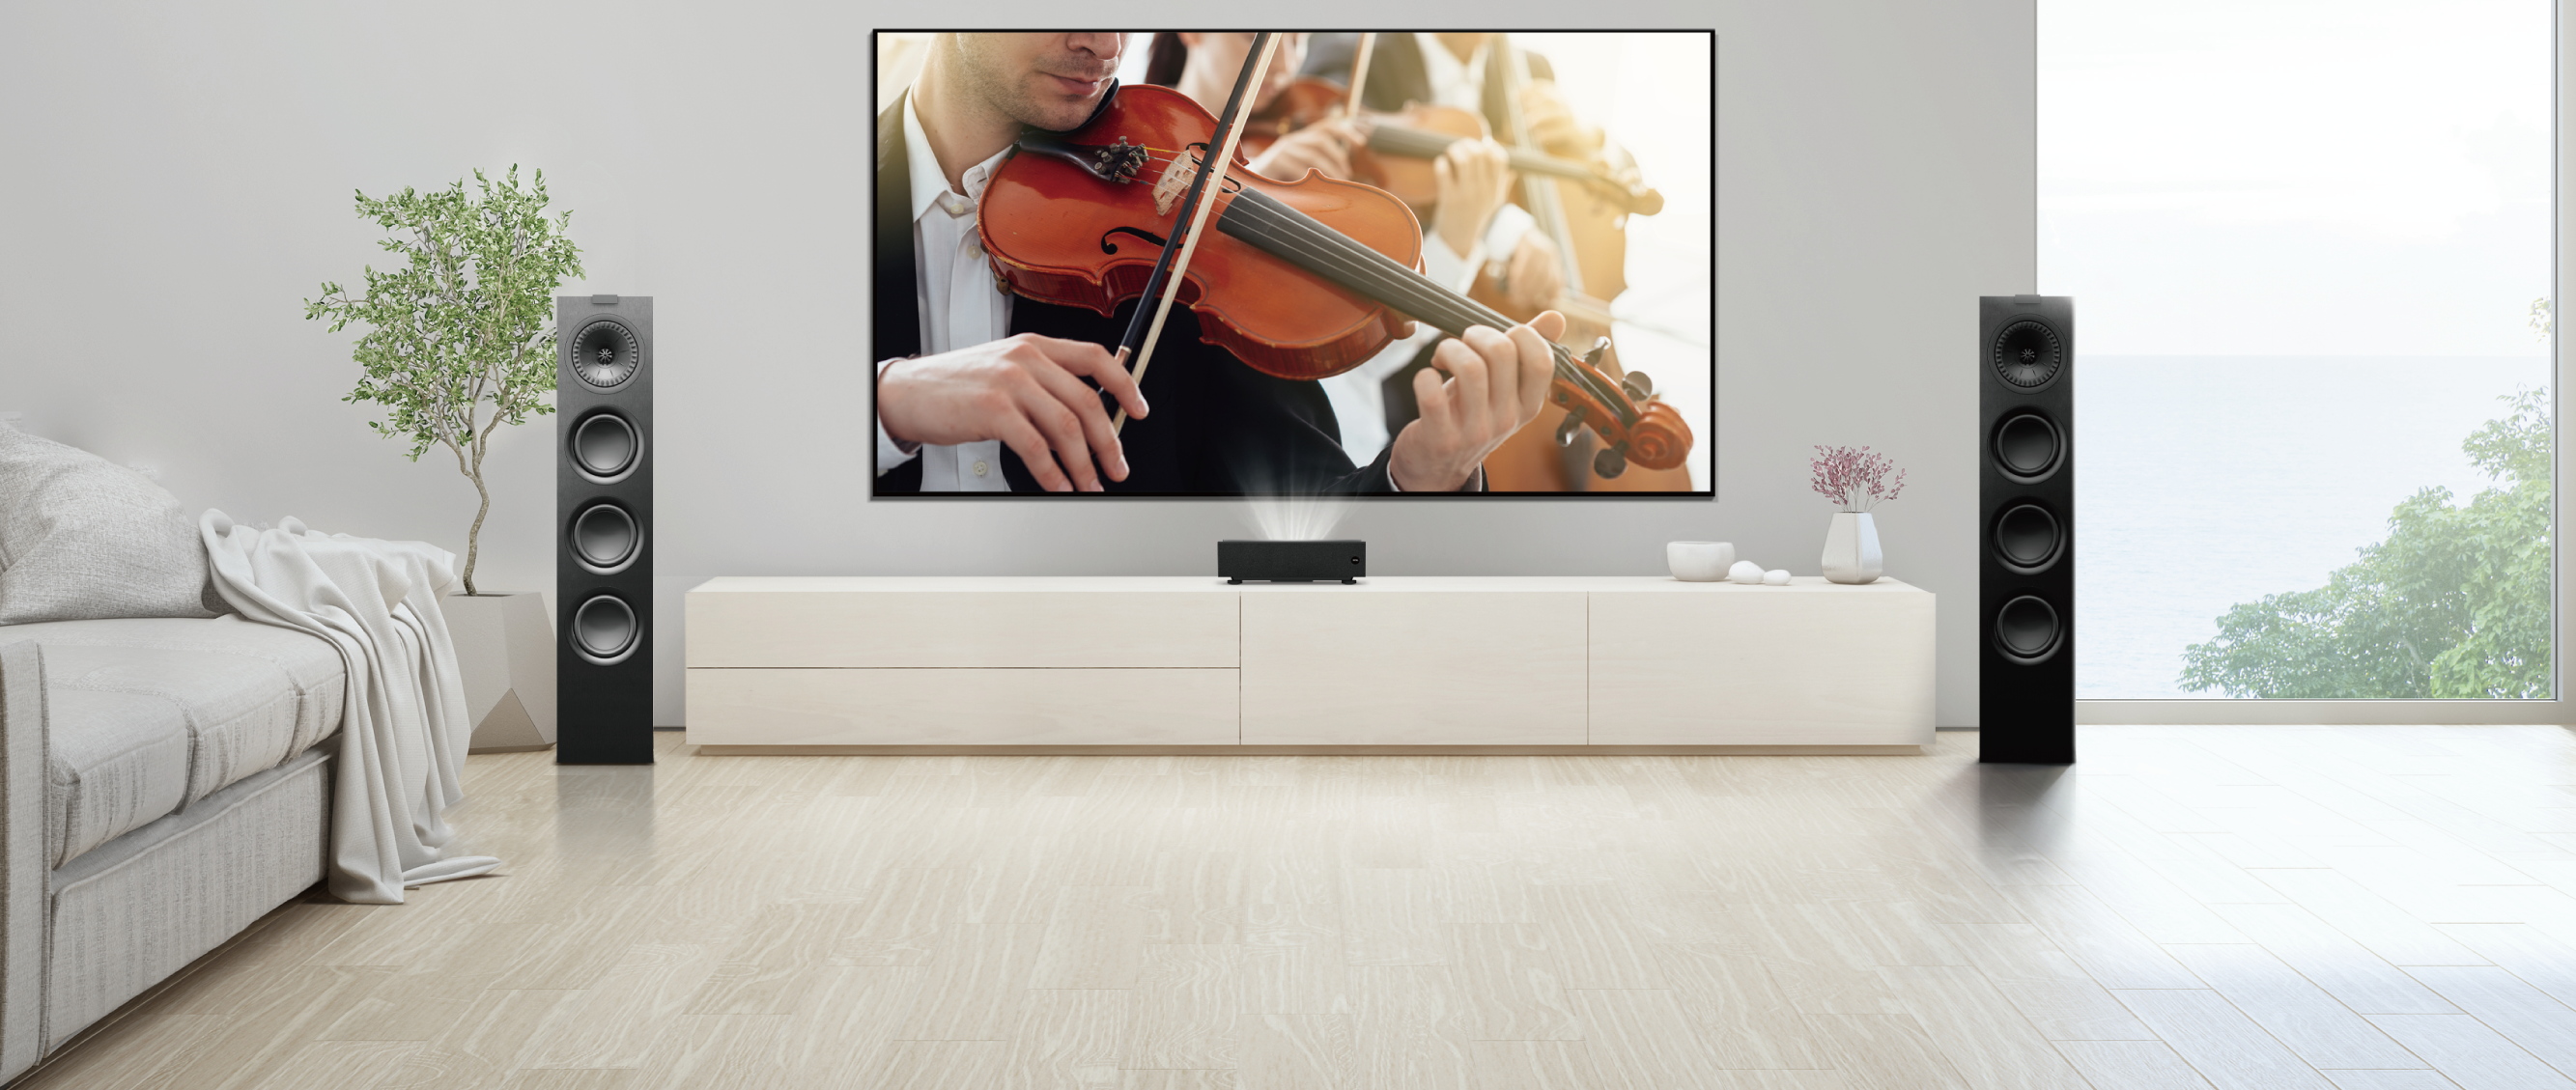 BenQ Proiector Sunet Surround Home Cinema Pentru o atmosferă cinematografică deosebită, V7050i poate fi conectat la un sistem de sunet extern prin porturi duale HDMI 2.0b şi SPDIF. Indiferent dacă vizionaţi filme, ascultaţi muzică sau că jucaţi, vă puteţi bucura întotdeauna de un sunet deosebit.